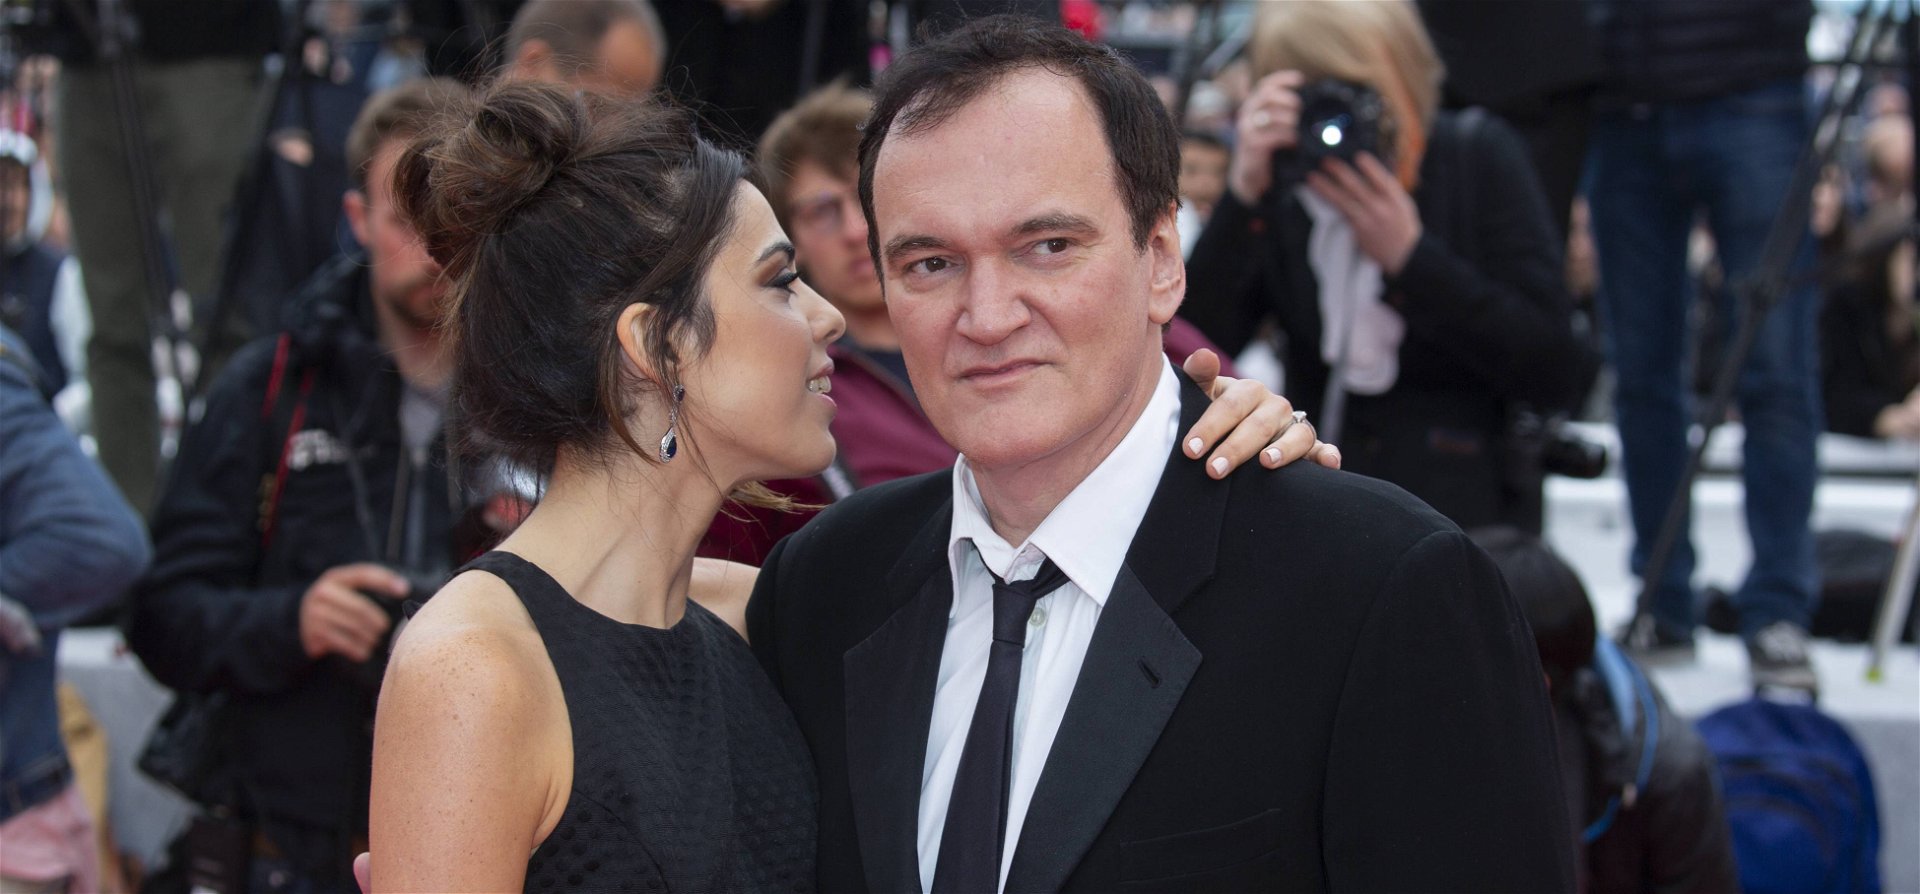 Tarantino nagyon szépen megkér mindenkit, hogy ne spoilerezzen